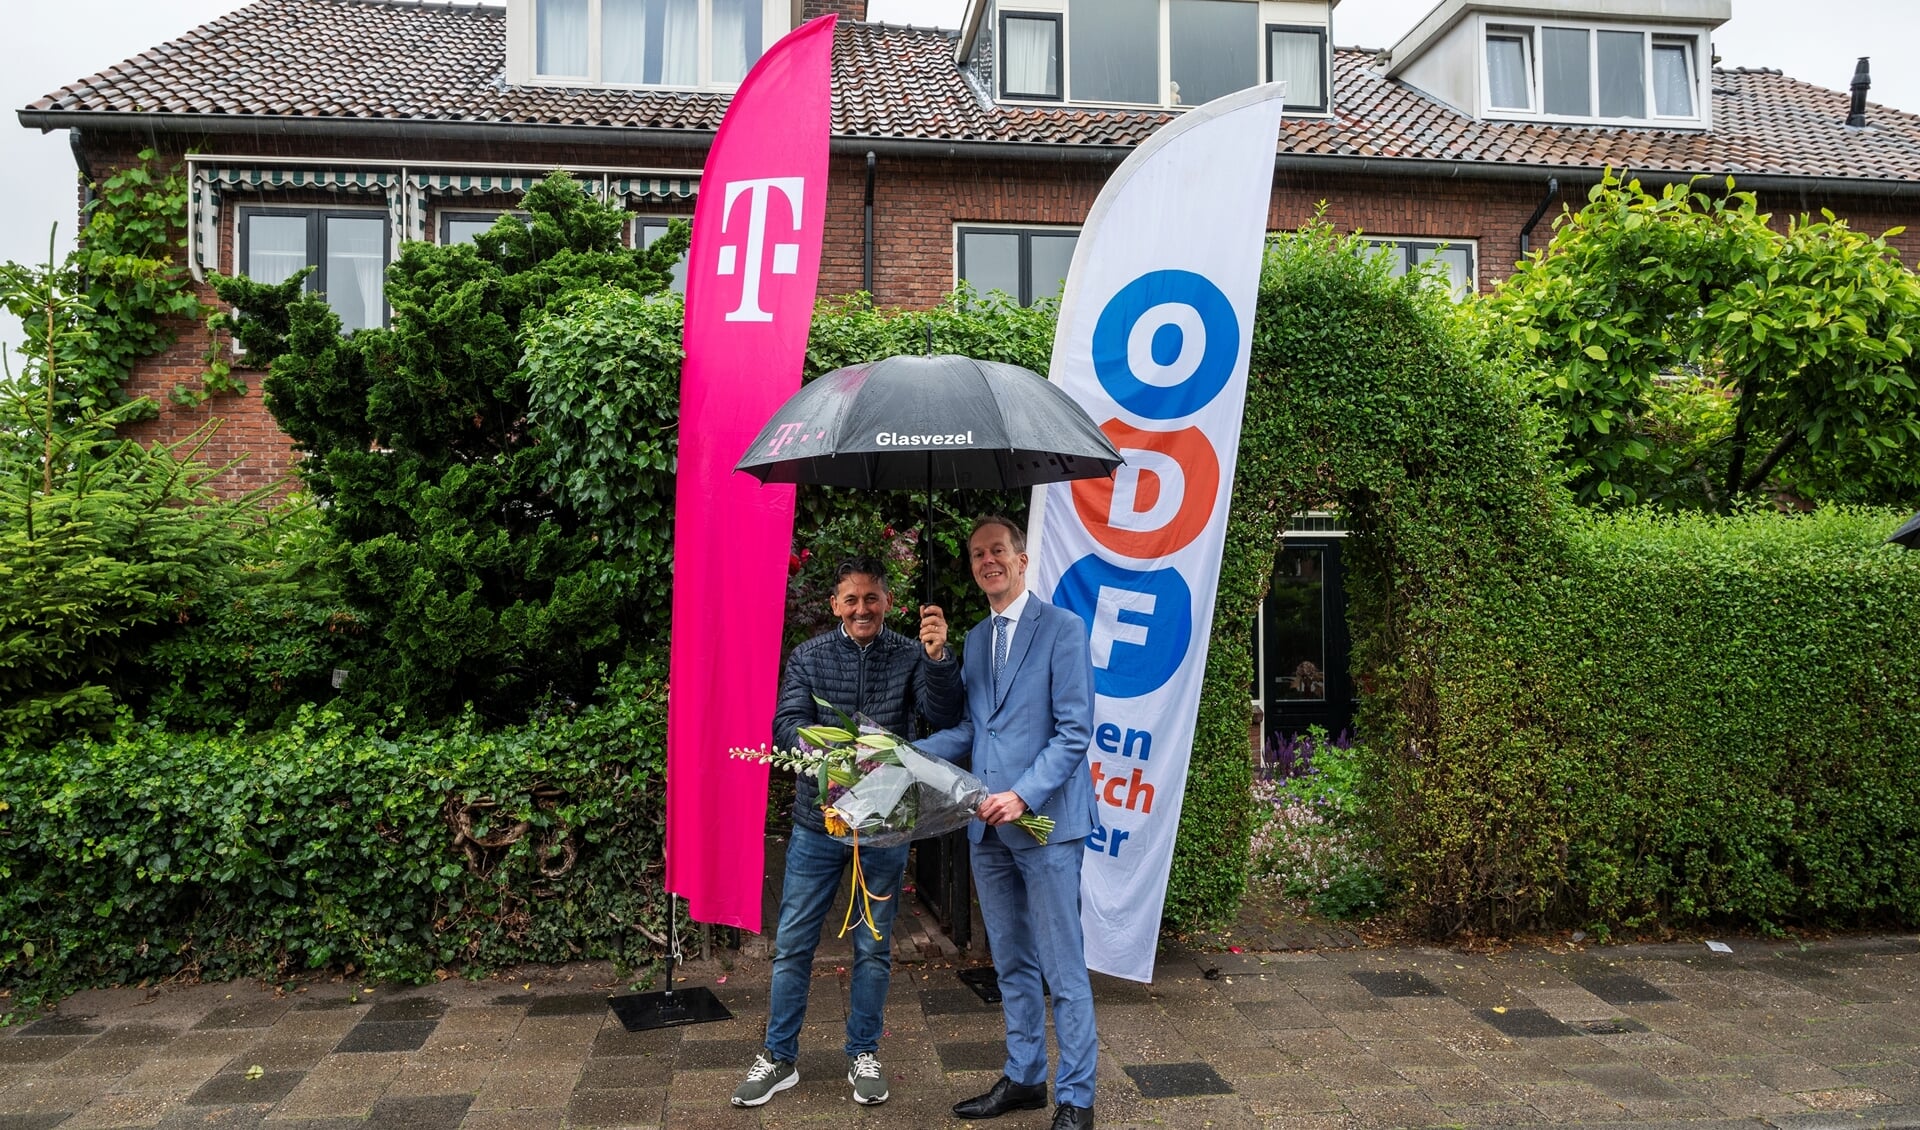 Wethouder Jan-Willem Rouwendal (rechts op de foto) feliciteert de heer Raimondi dat hij als eerste inwoner in Leidschendam kan gebruikmaken van het supersnelle glasvezel (foto Michel Groen).